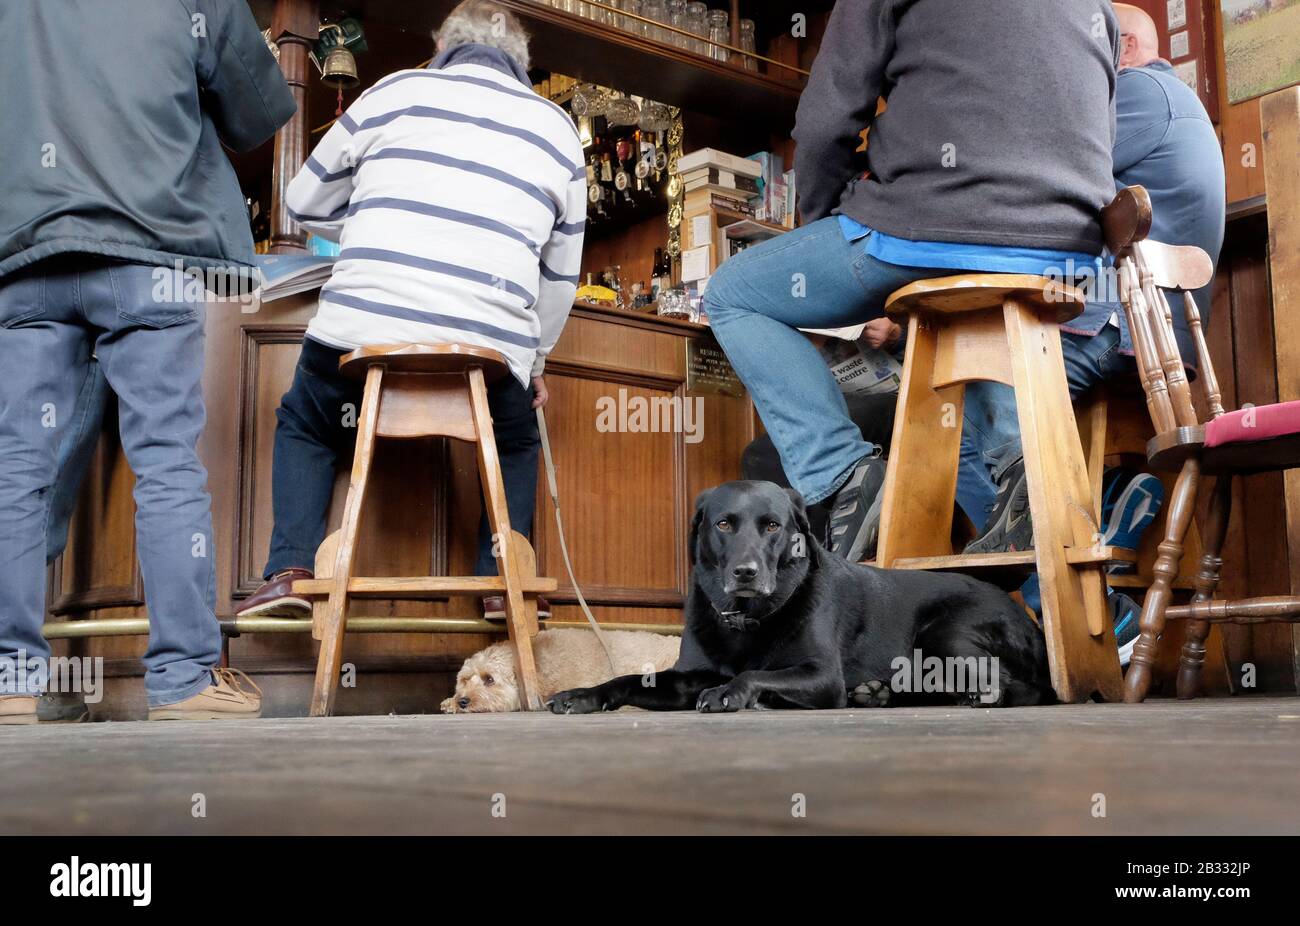 Männer sitzen in der Bar des Pubs White hart in Aldeburgh, zwei Hunde ruhen auf dem Boden. Aldeburgh, Suffolk UK. Stockfoto